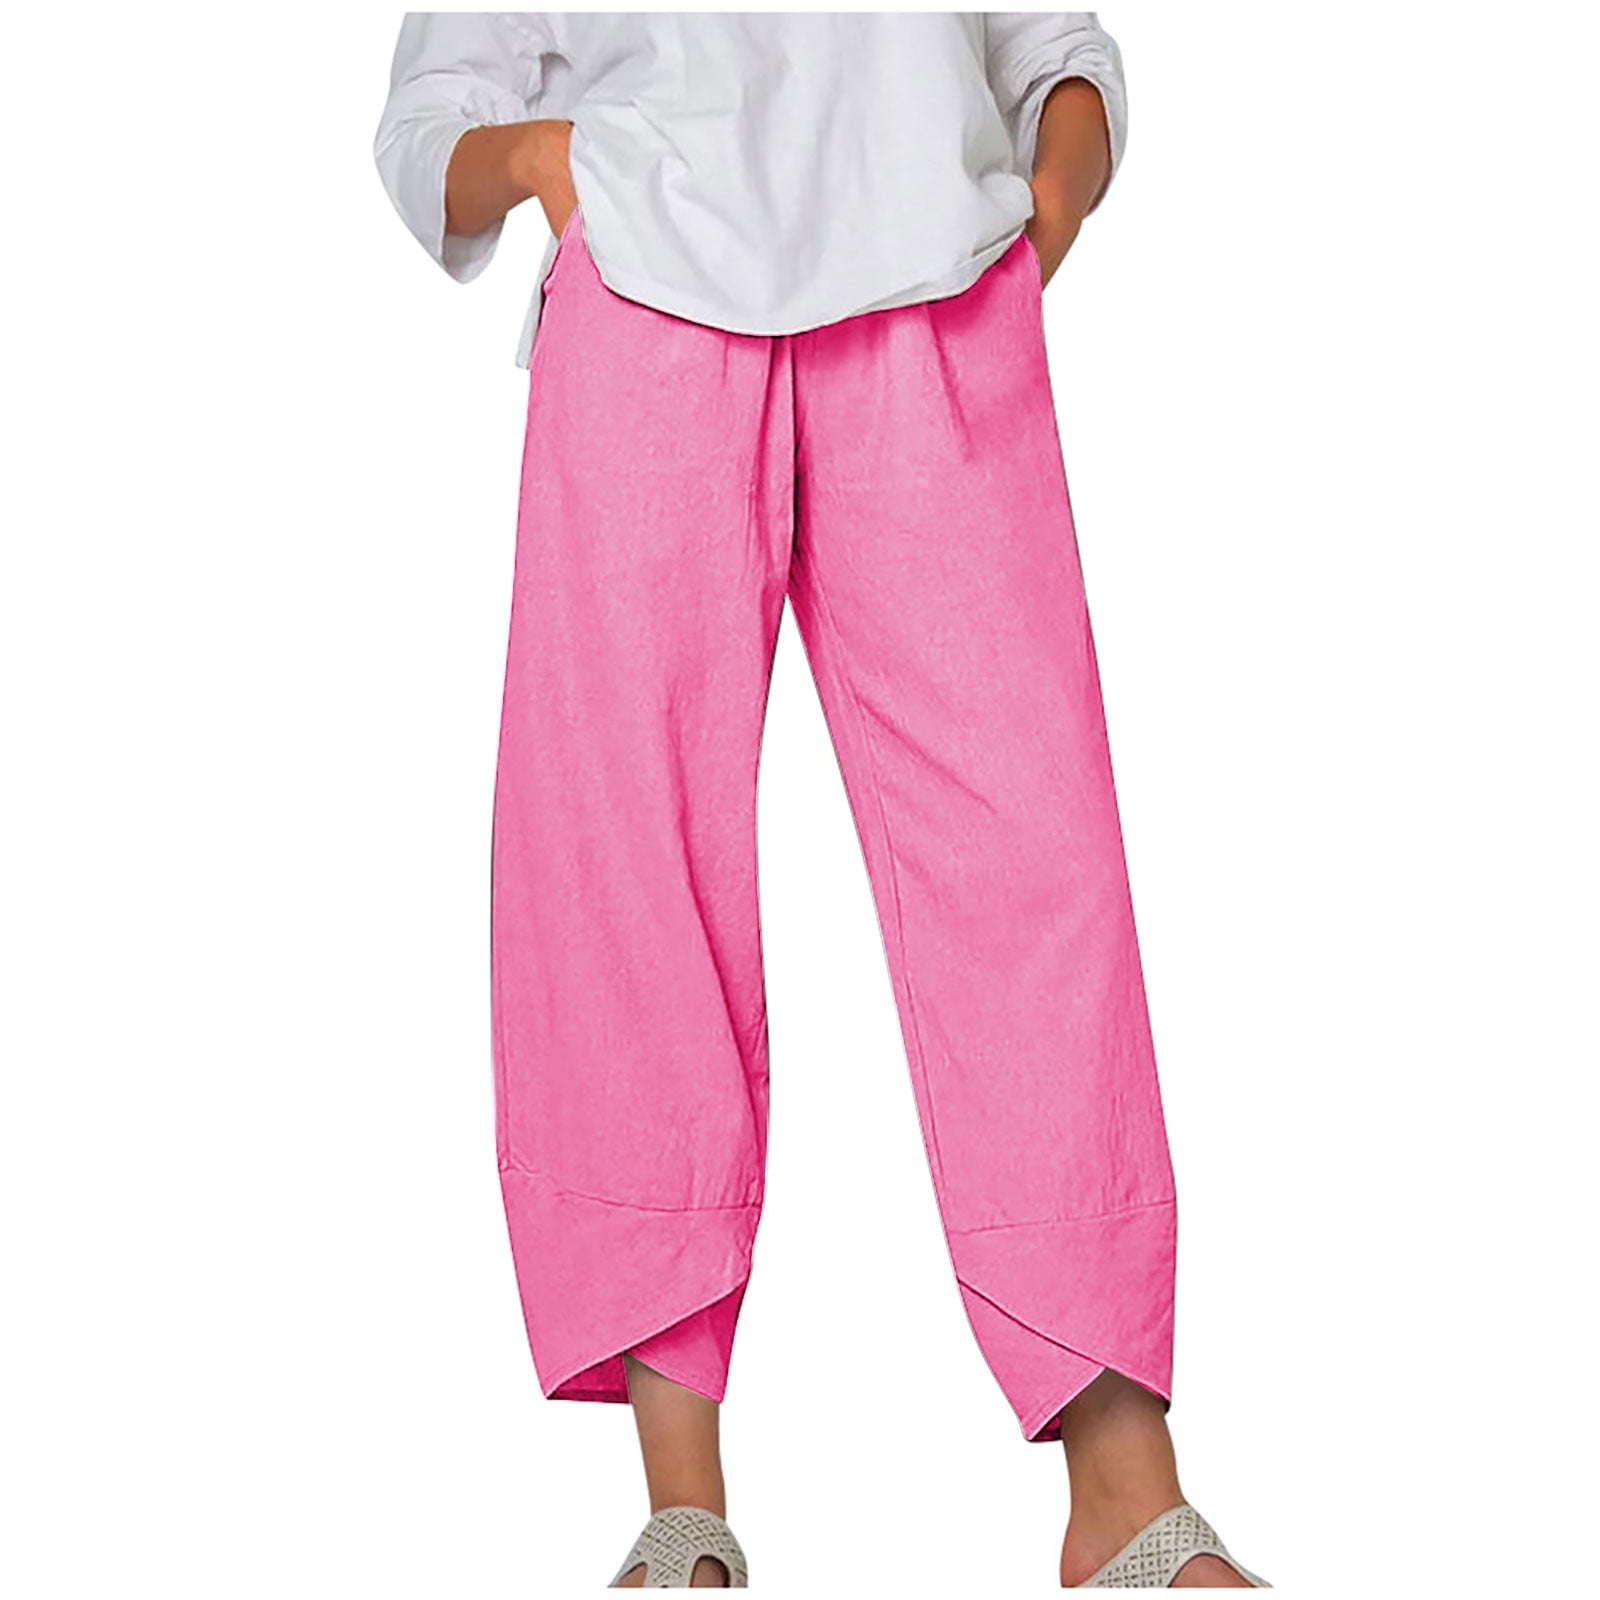 Women's Casual Cotton Loose Pocket Drawstring Pajama Pants at Rs